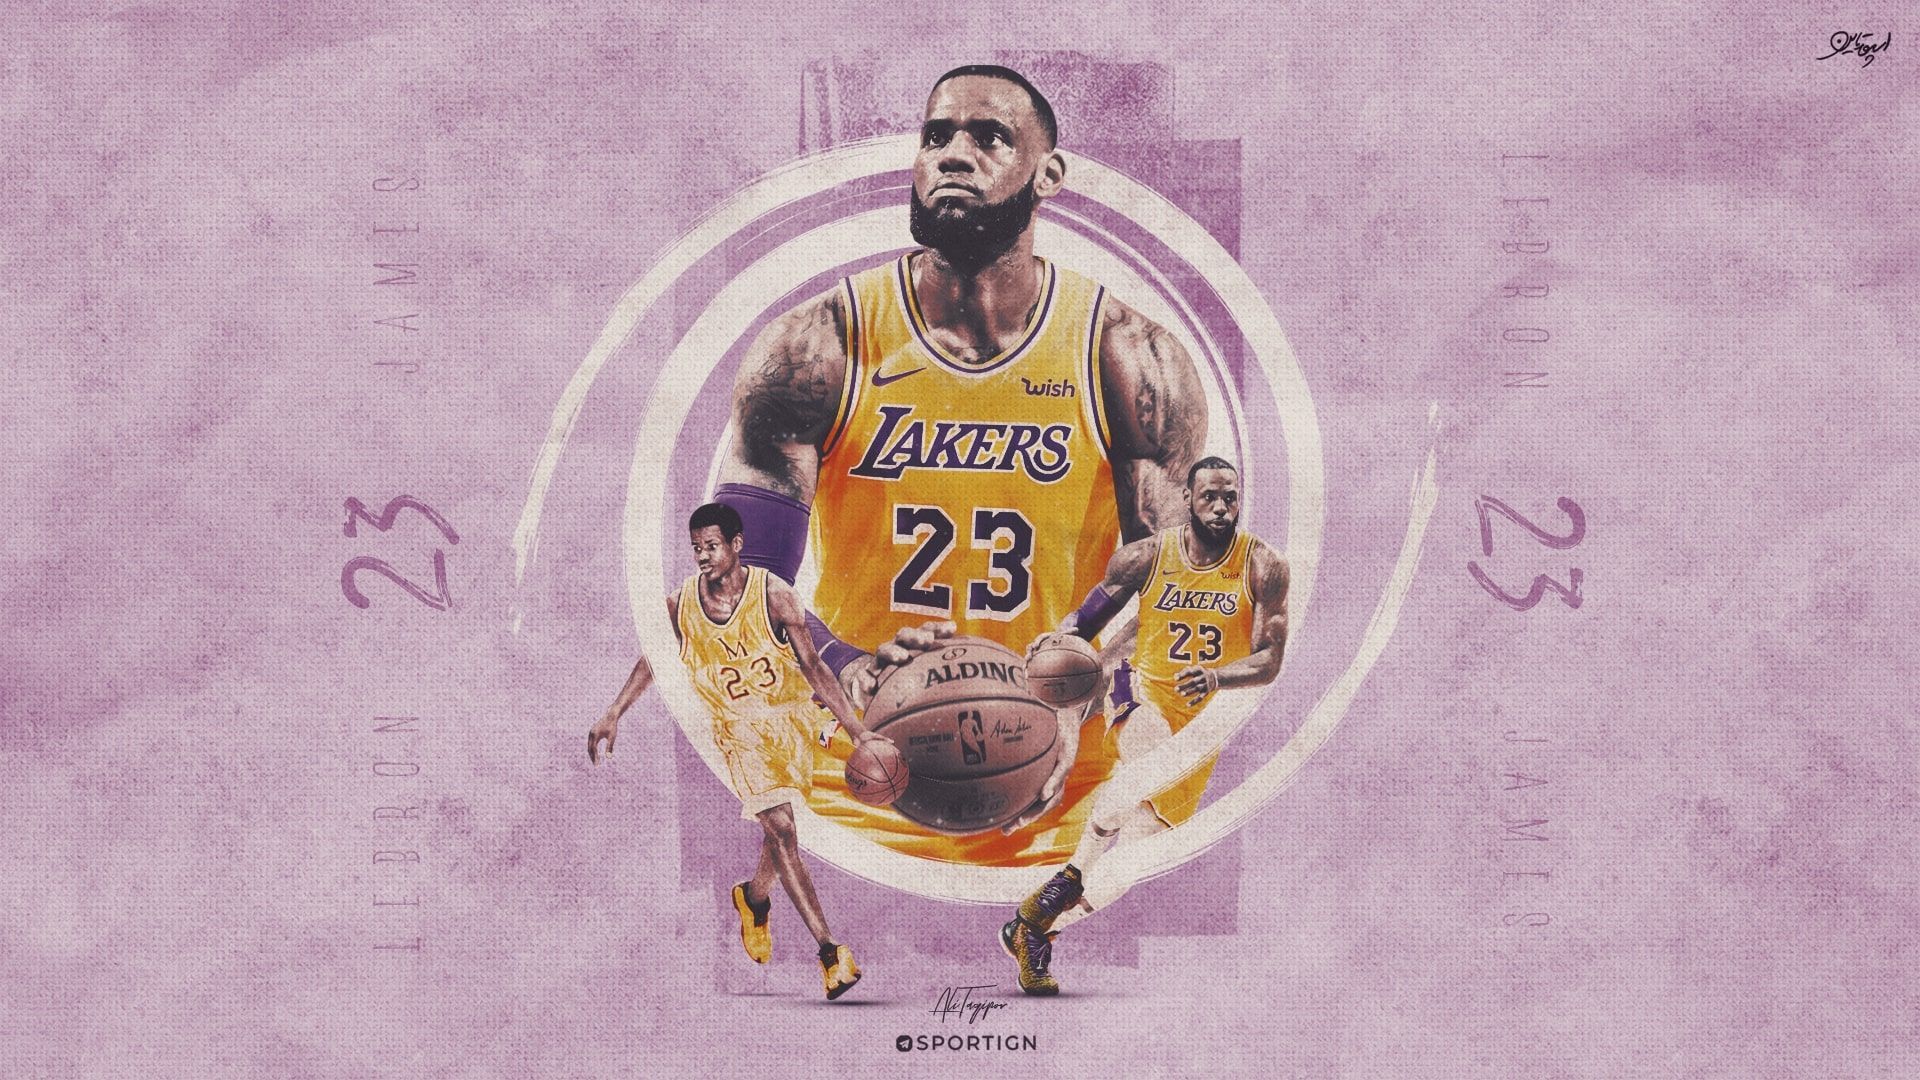 Lakers 2020 Desktop Wallpapers - Wallpaper Cave